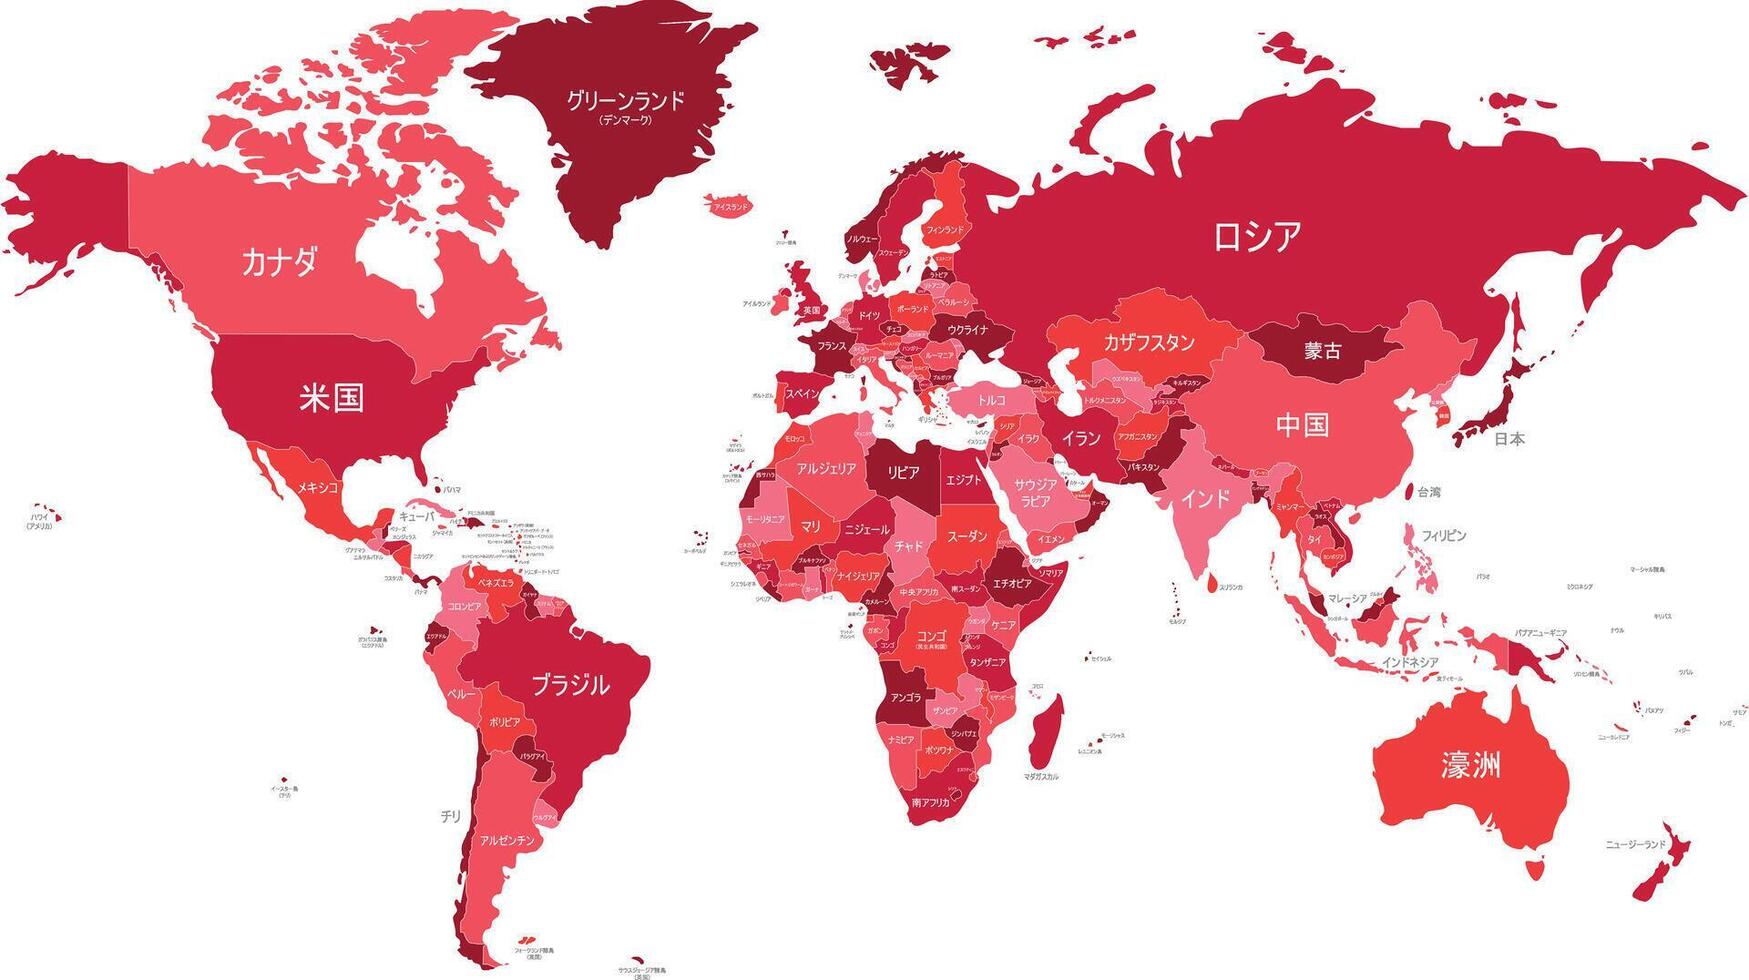 politisk värld Karta vektor illustration med annorlunda toner av röd för varje Land och Land namn i japanska. redigerbar och klart märkt skikten.